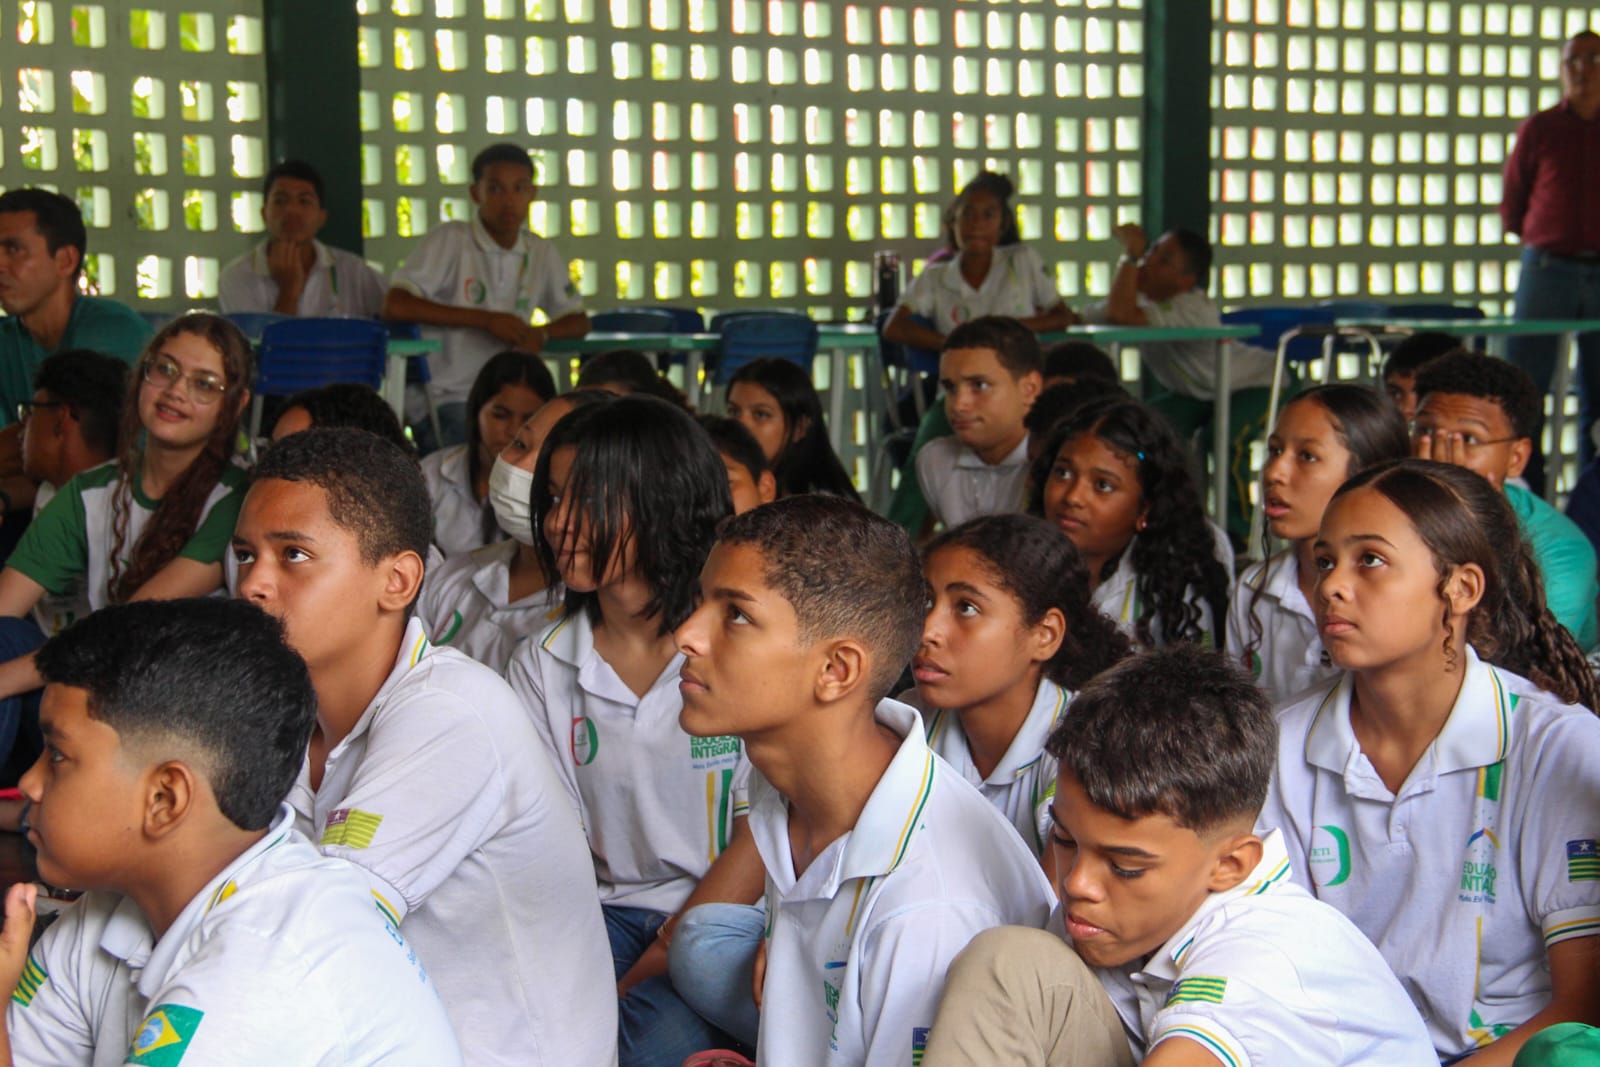 Atos - Igarapé Grande,Maranhão: Estutande de Educação física Bacharel -  fazendo anamnese básico para alunos iniciantes e como personal trainer (MA)